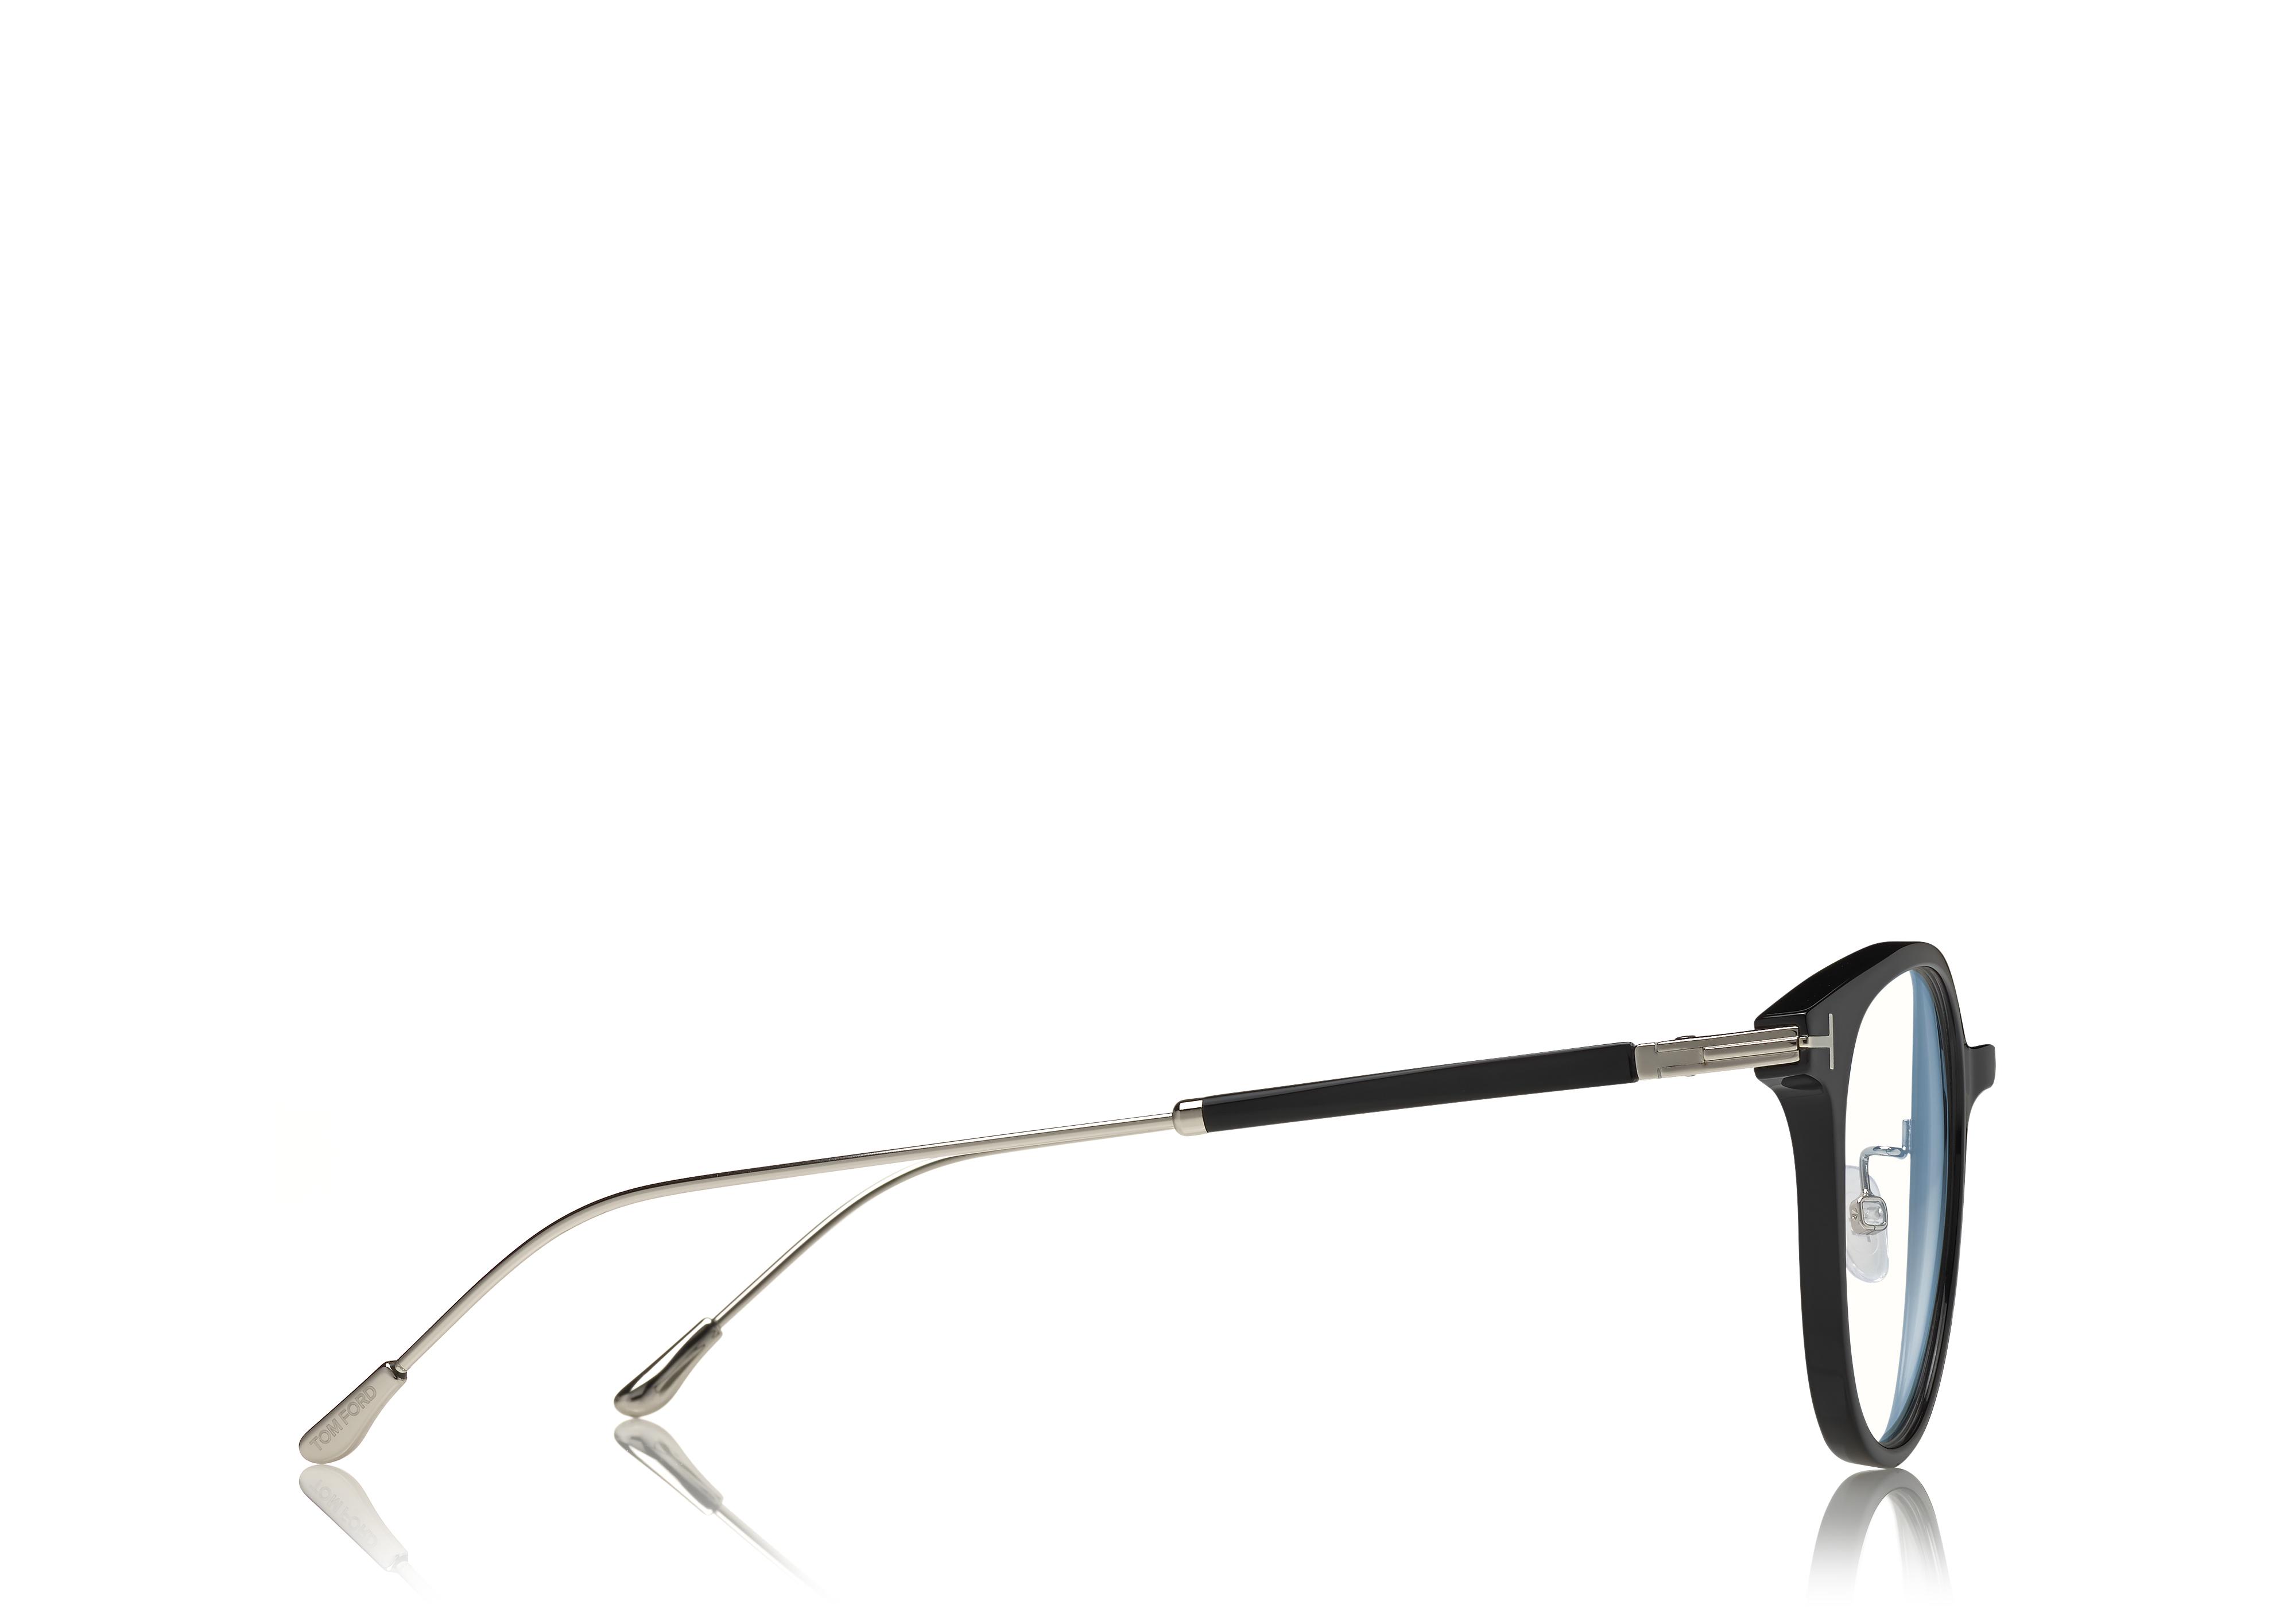 Chanel COLLECTOR'S 2013 Black Acetate Coco Silhouette Sunglasses